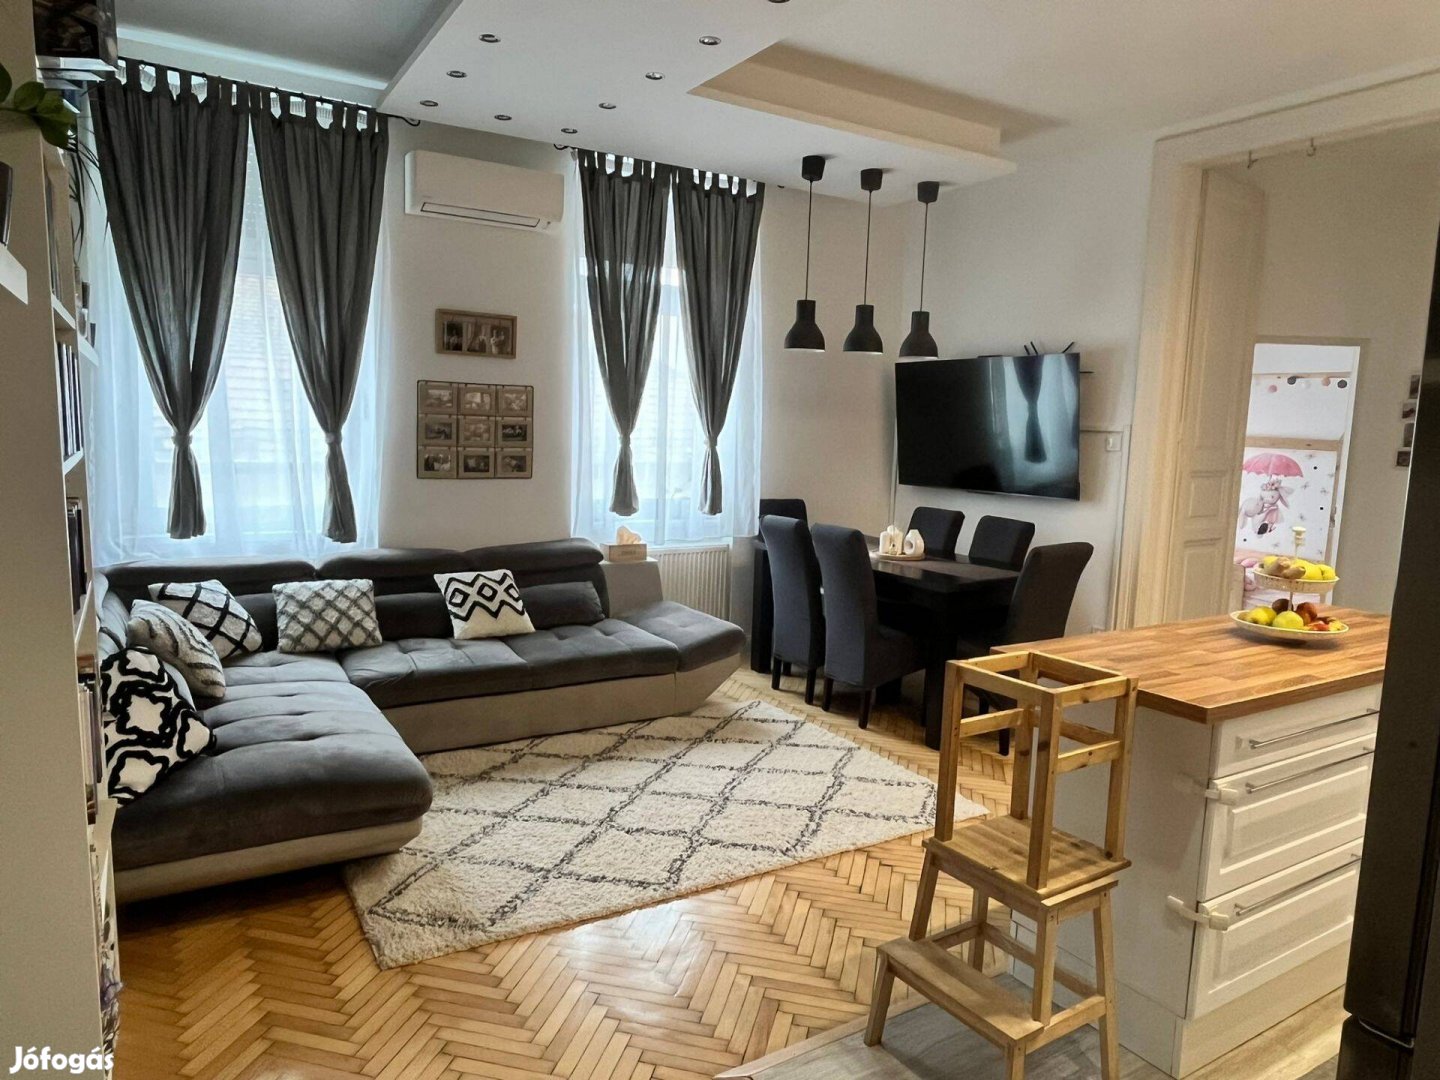 Eladó 3 szoba+nappali 78nm2 lakás Budapest 8. ker Corvin közelében